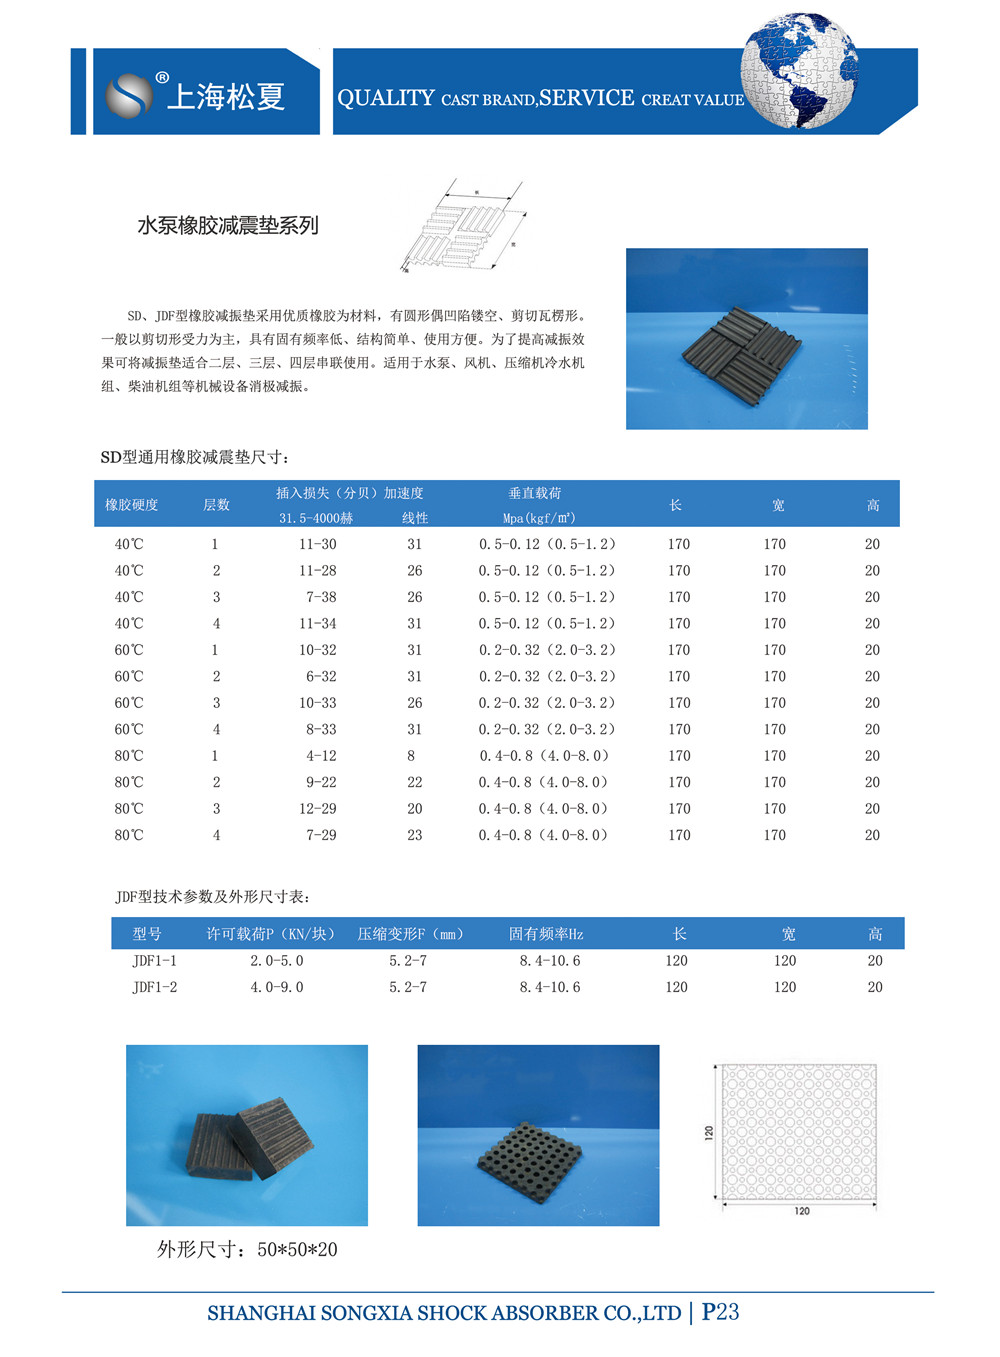 SD橡胶减震器产品参数